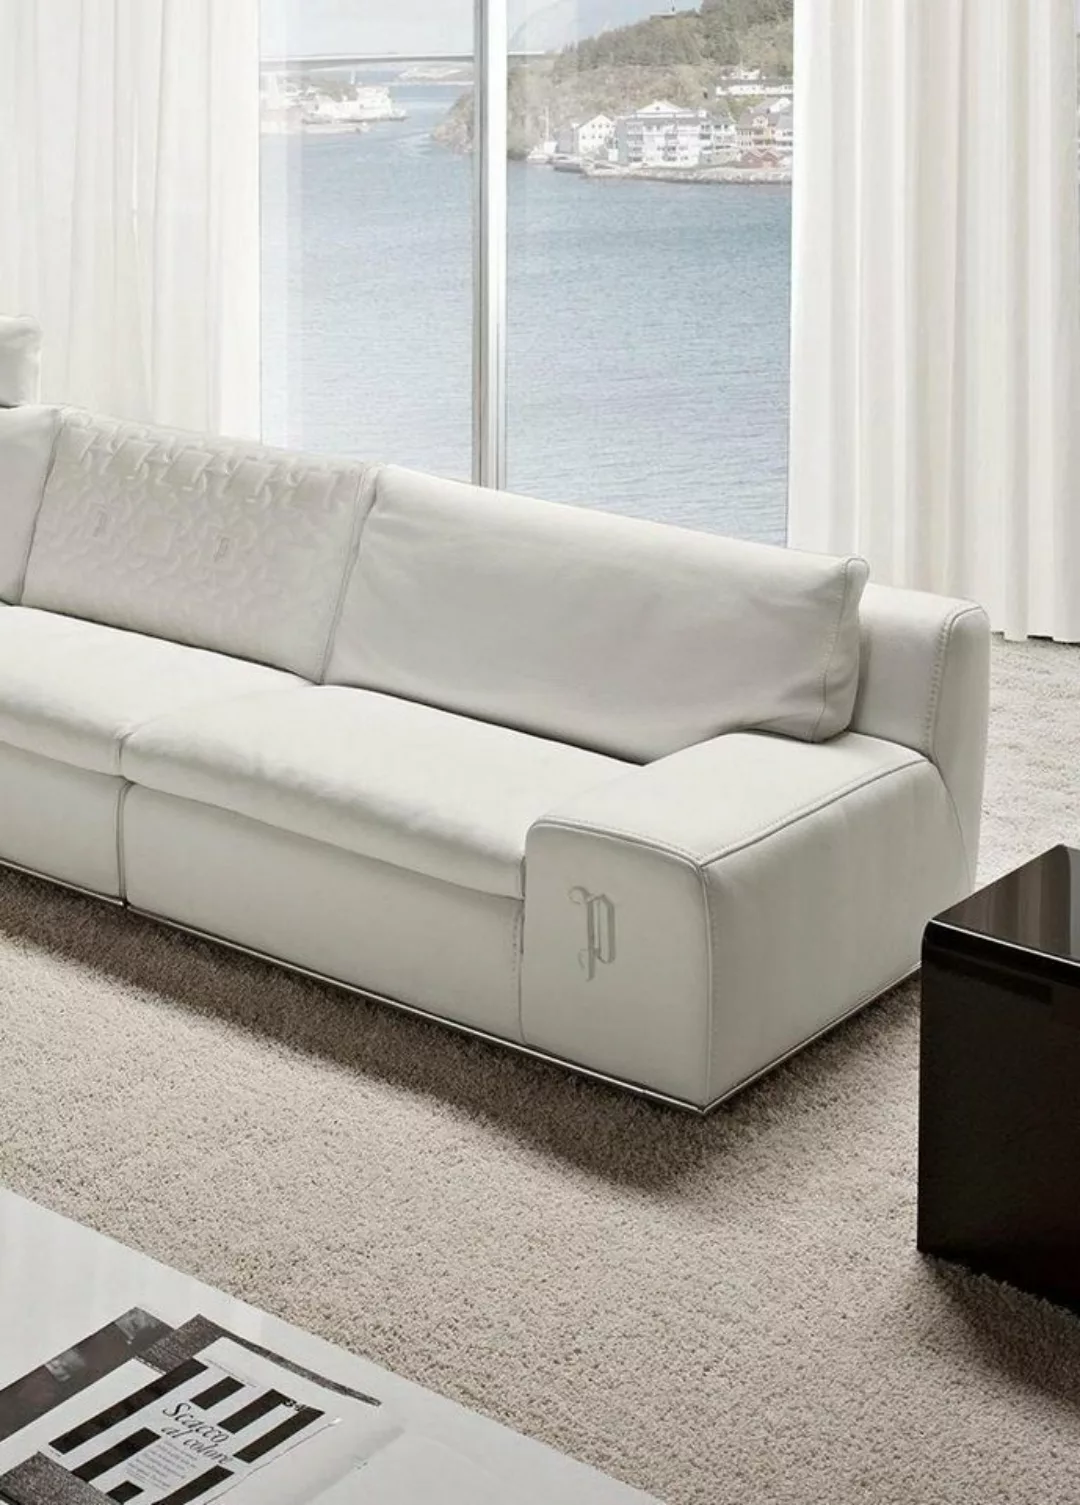 JVmoebel Sofa Sofa 4 Sitzer Big xxl Couch Sofas Couchen Wohnzimmer Design V günstig online kaufen